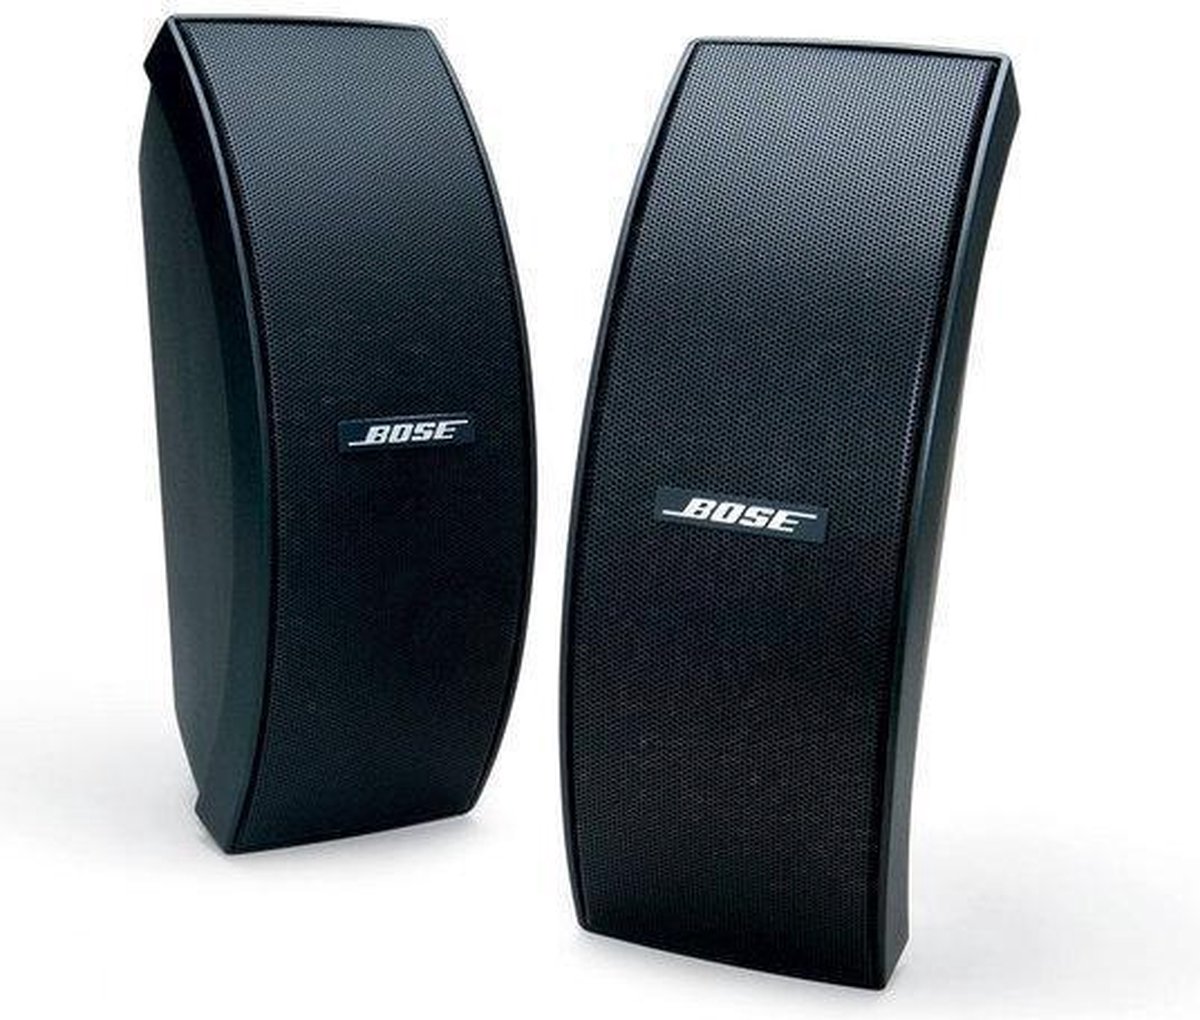 Preventie haag Dapperheid Bose 151 - Weerbestendige speakers - 2 stuks - Zwart | bol.com